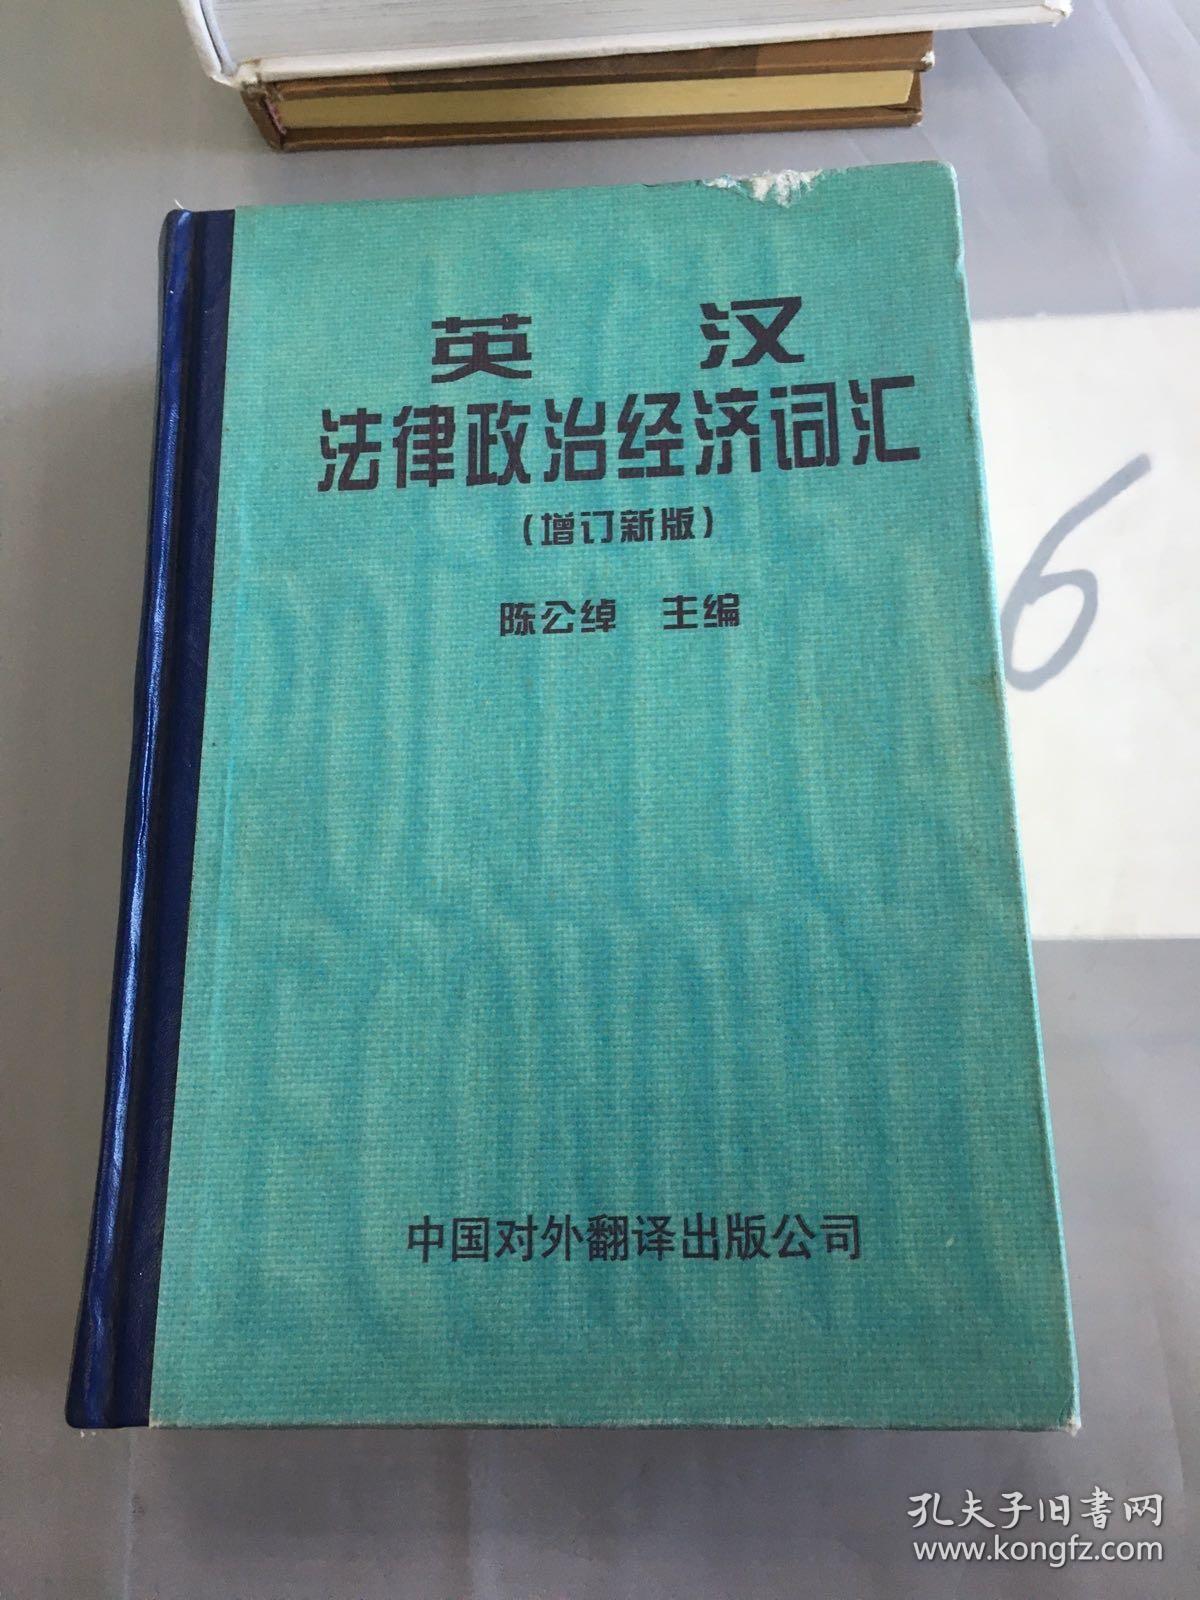 英汉法律政治经济词汇:增订新版